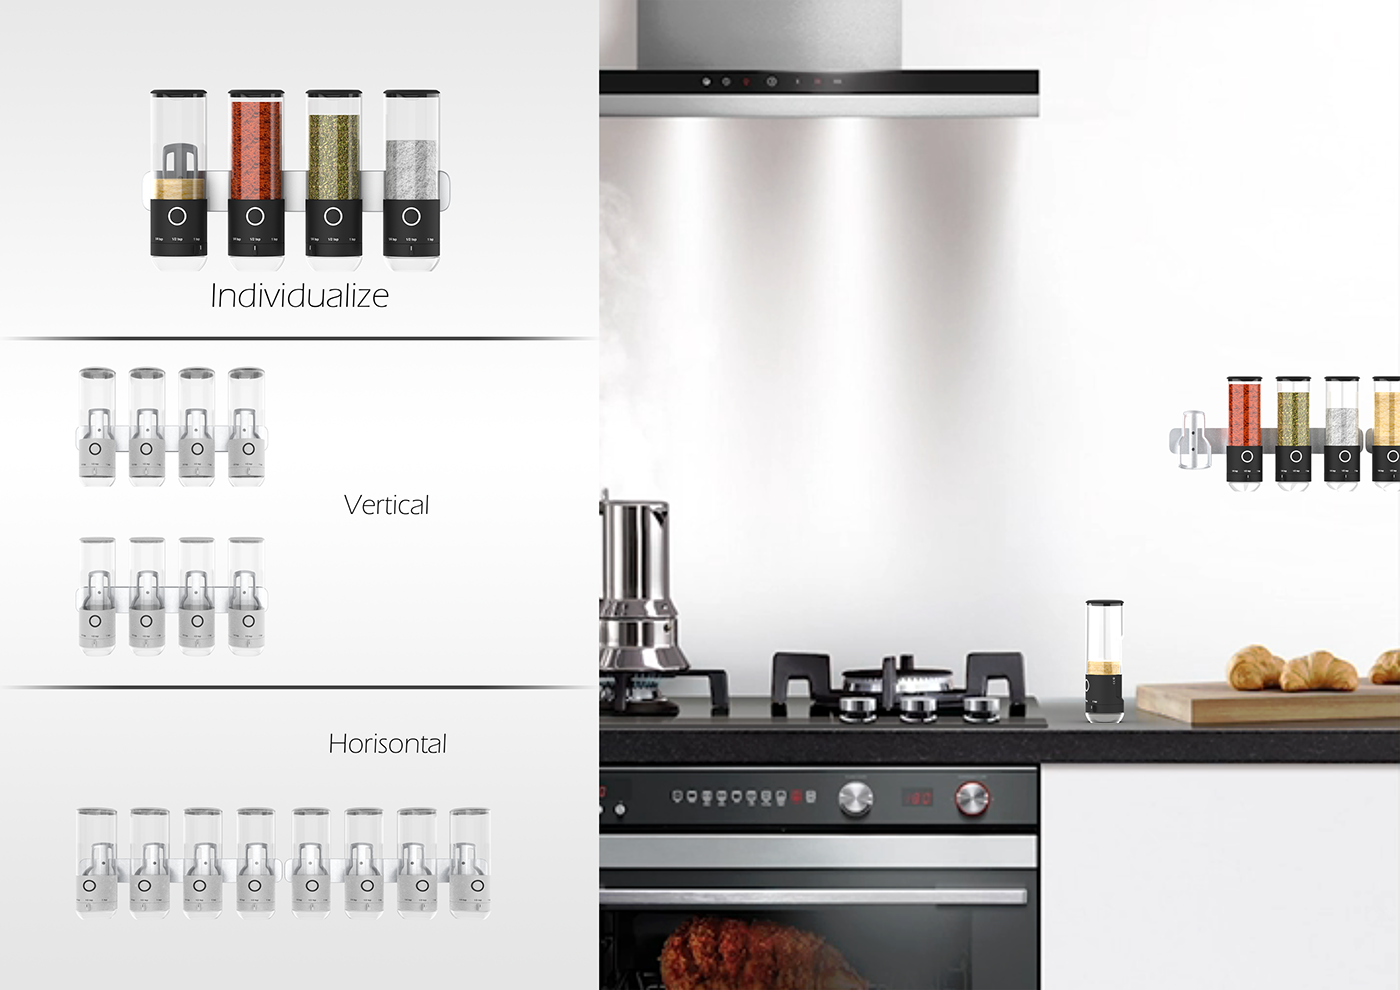 kitchen appliances Inclusive dispenser spice storage Rsa